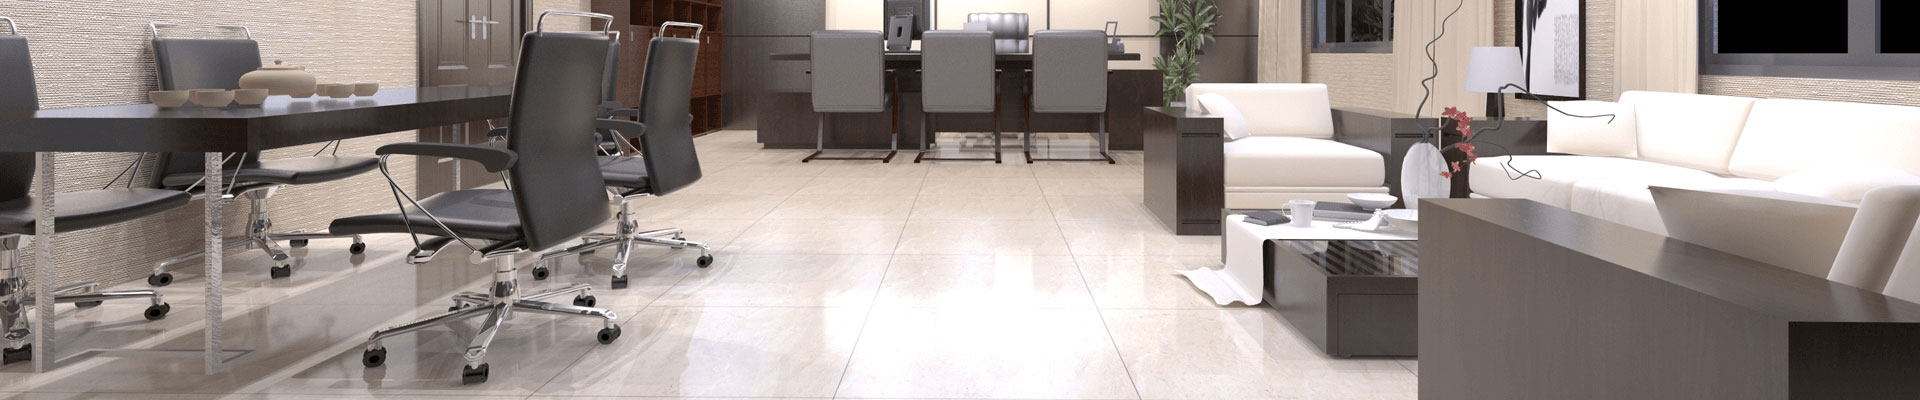 Office Floor Tiles Wholesale Exterior Tiles Manufacturer & Vendor Page 2